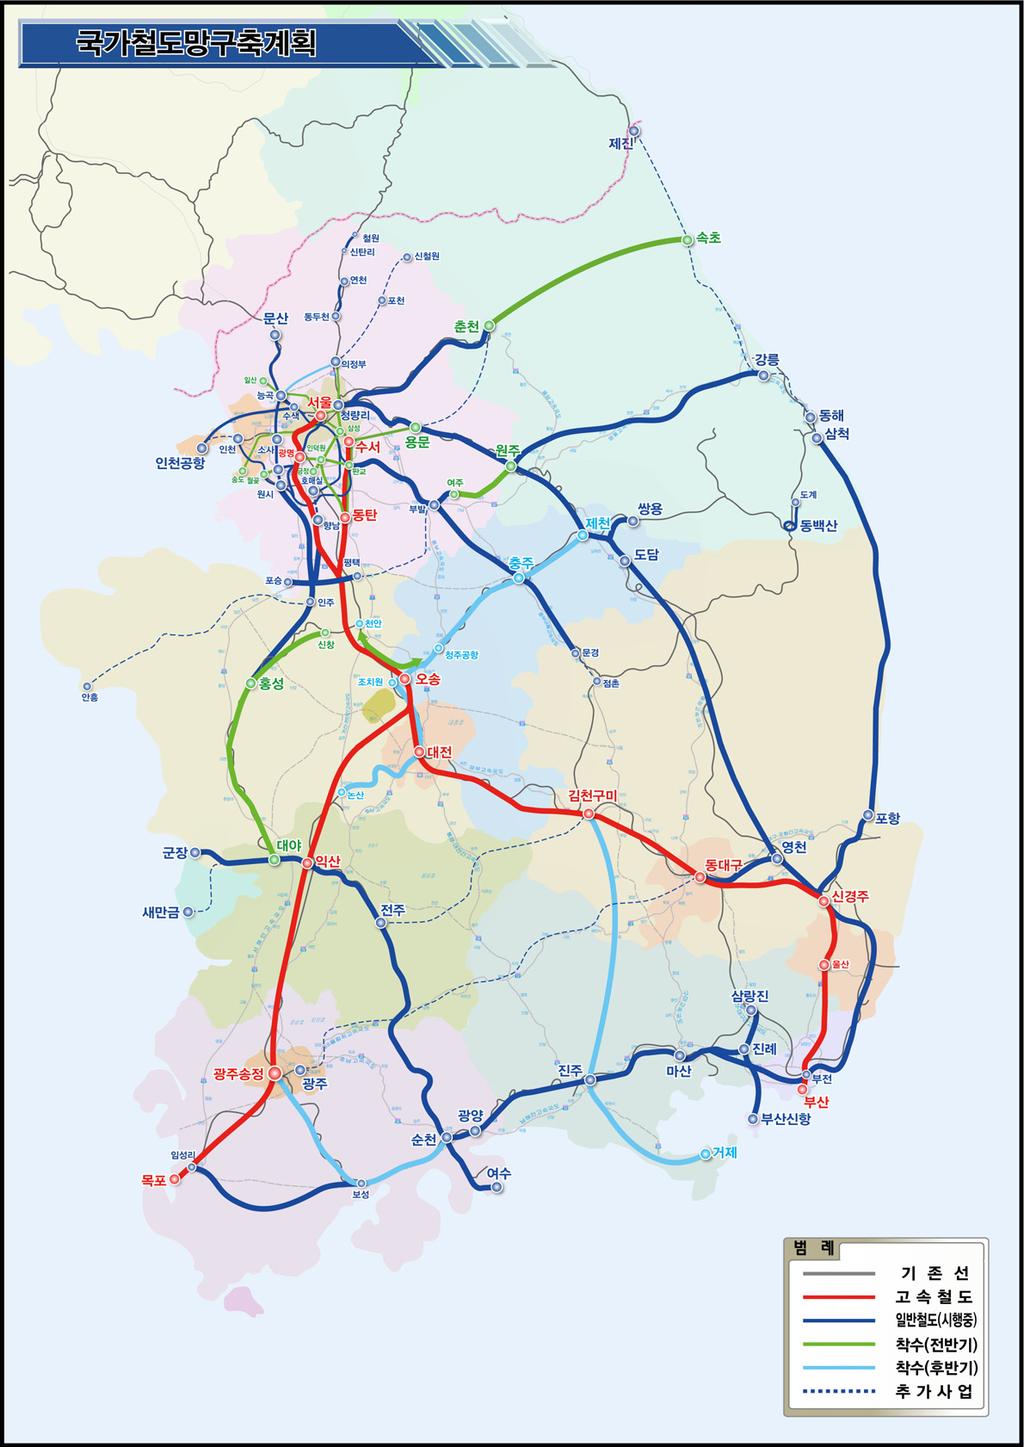 3 녹색철도물류체계구축 - 핵심물류거점인항만 산업단지 내륙화물기지를간선철도망과연결하는인입철도 지속확충 4 편리한철도이용환경조성 - KTX역, 전철역, 터미널등에상업 문화